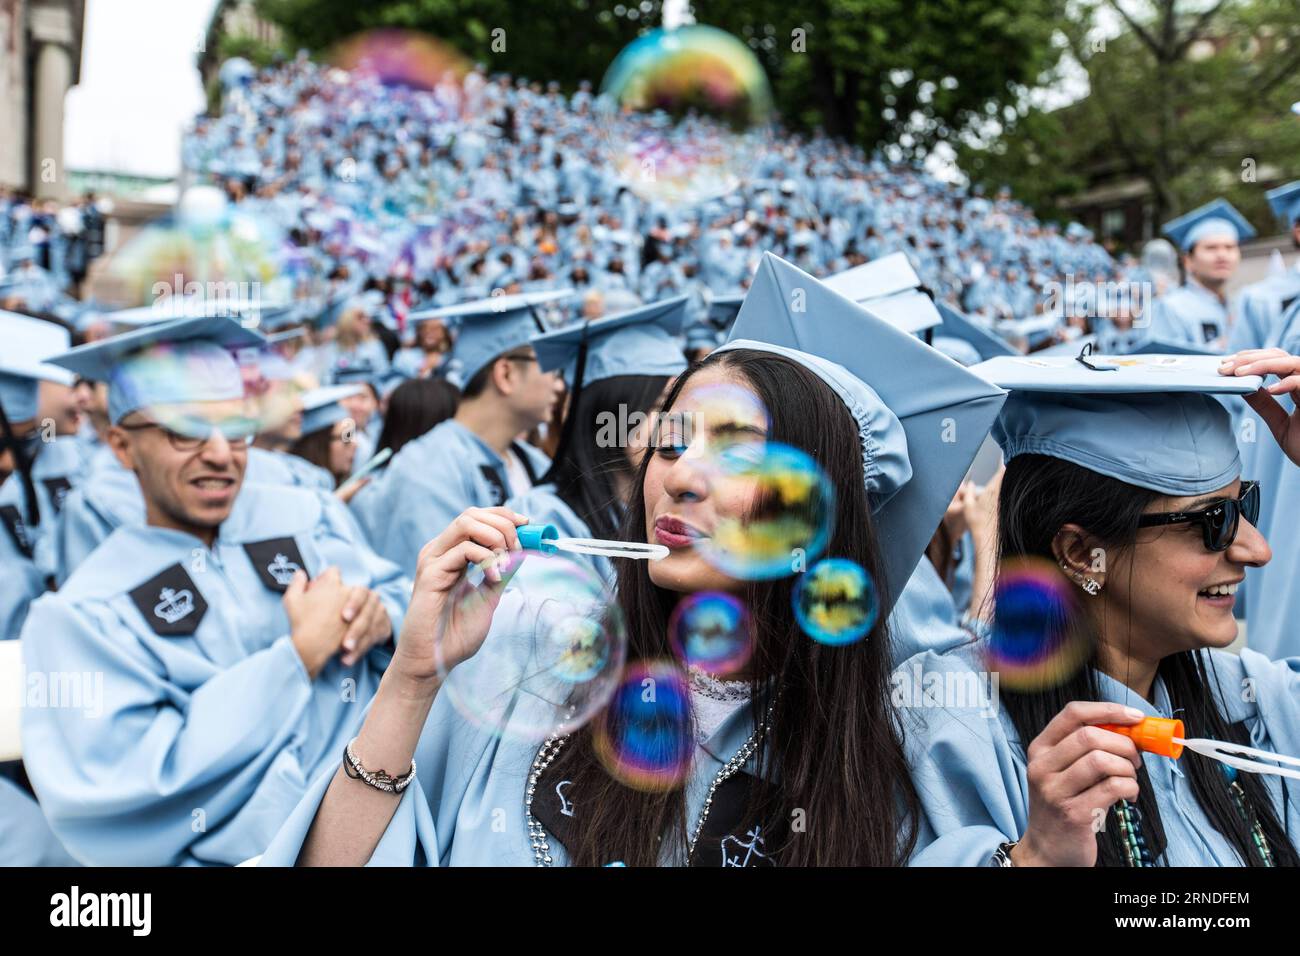 Abschlusszeremonie an der Columbia University in New York (160518) -- NEW YORK, 18 mai 2016 -- membres de la promotion de 2016 Blow Bubbles lors de la cérémonie de lancement de la 262e année académique de l'Université Columbia à New York, aux États-Unis, le 18 mai 2016. Plus de 15 000 diplômés âgés de 18 à 82 ans, dont quelque 1800 étudiants internationaux de plus de 100 pays ont participé à la cérémonie mercredi. États-Unis-NEW YORK-COLUMBIA UNIVERSITY-2016 LixMuzi PUBLICATIONxNOTxINxCHN cérémonie de clôture à l'Université Columbia à New York 1605 Banque D'Images